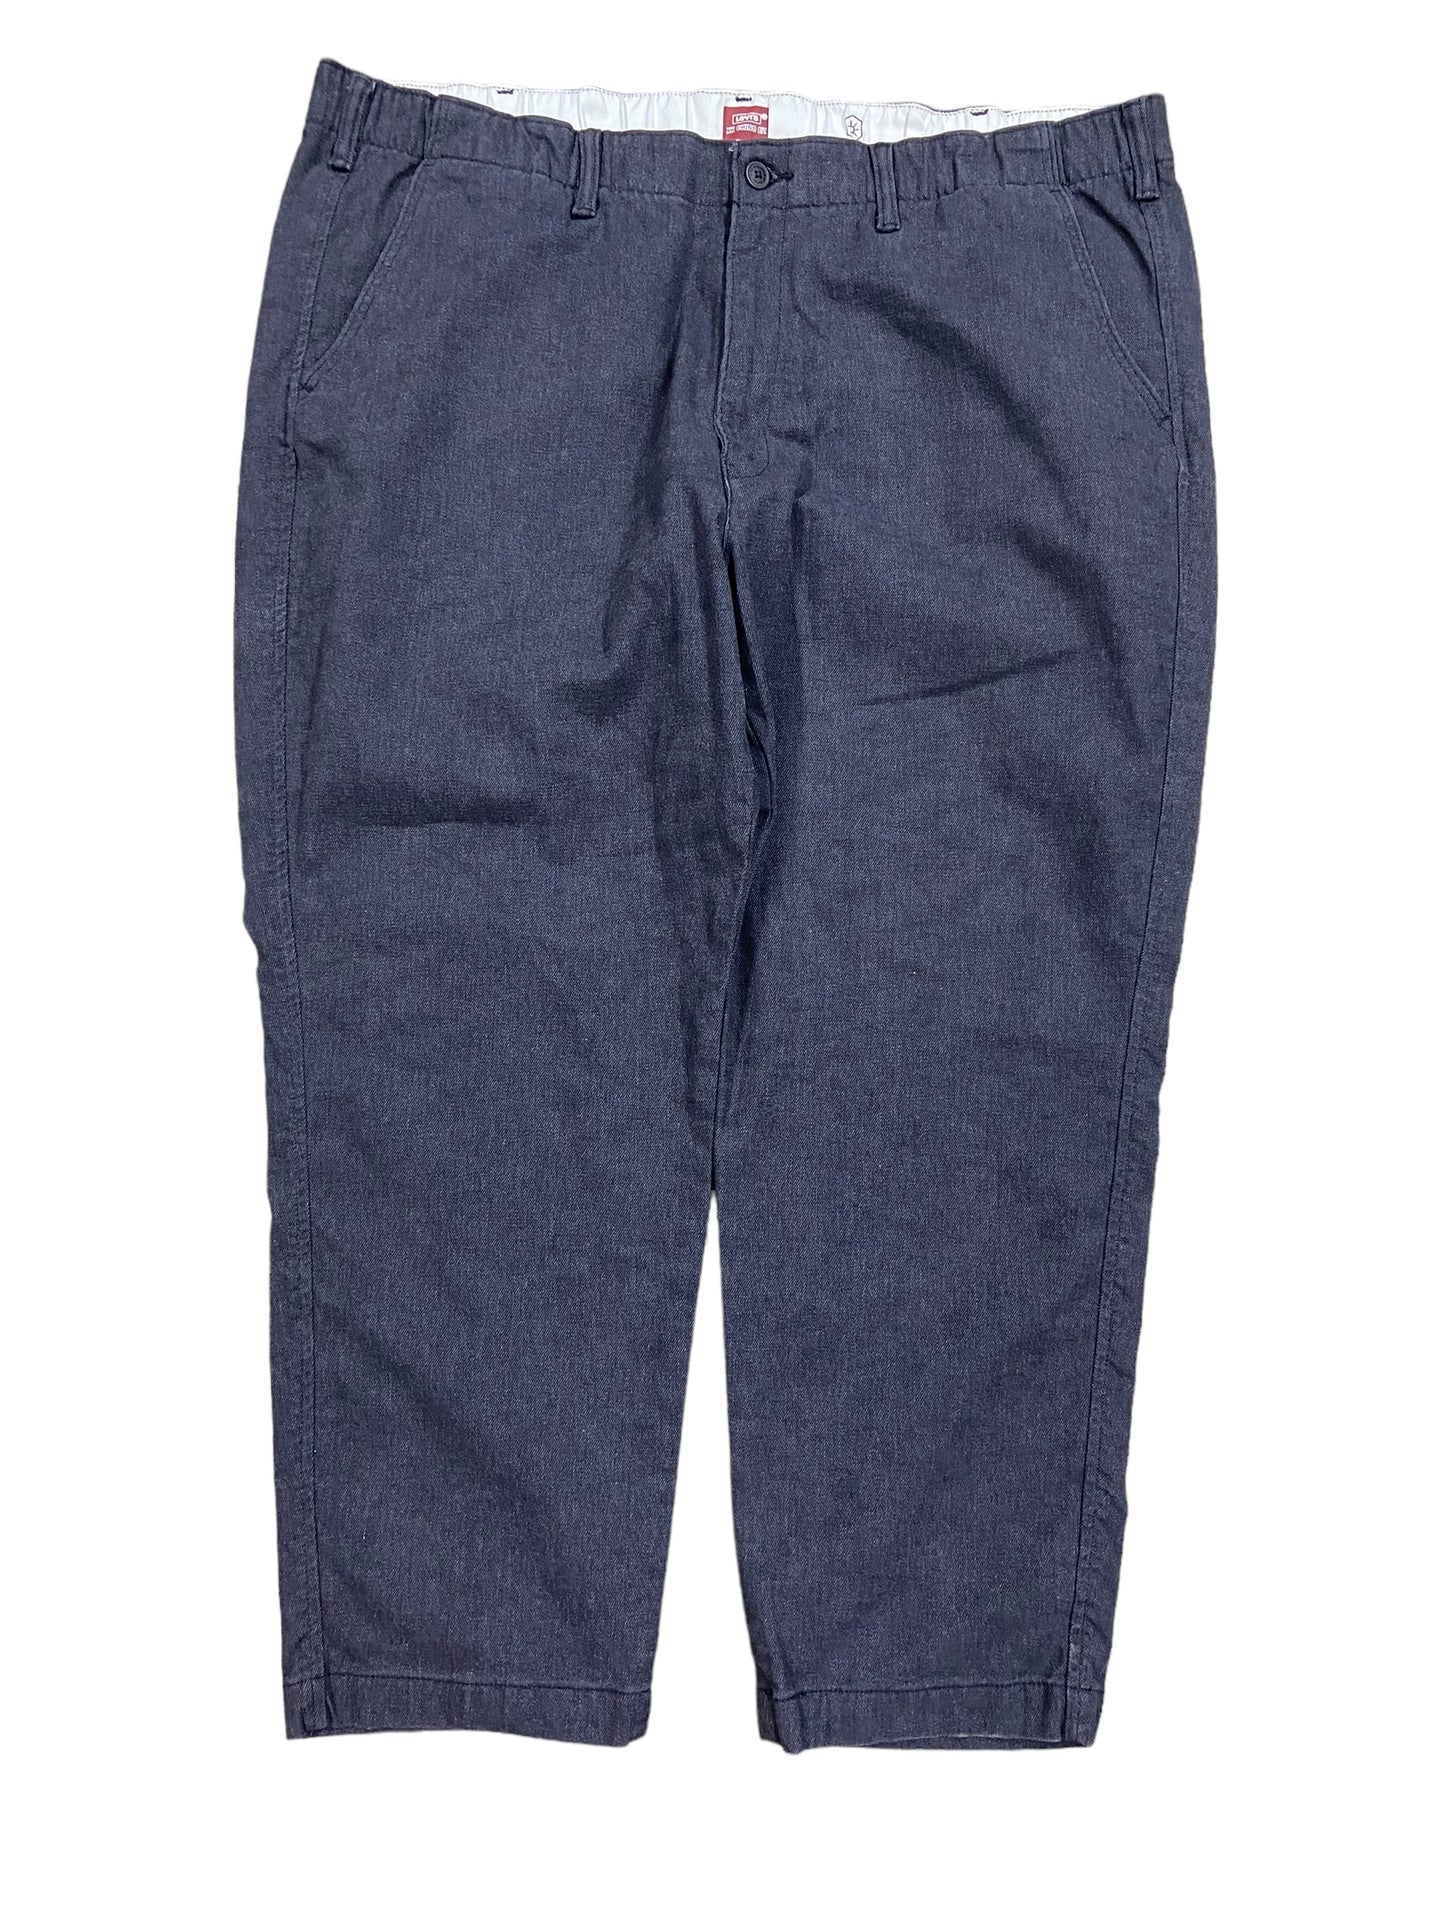 Levi's Chino XX Waterless Taper Fit Gray Pants Sz 44x28